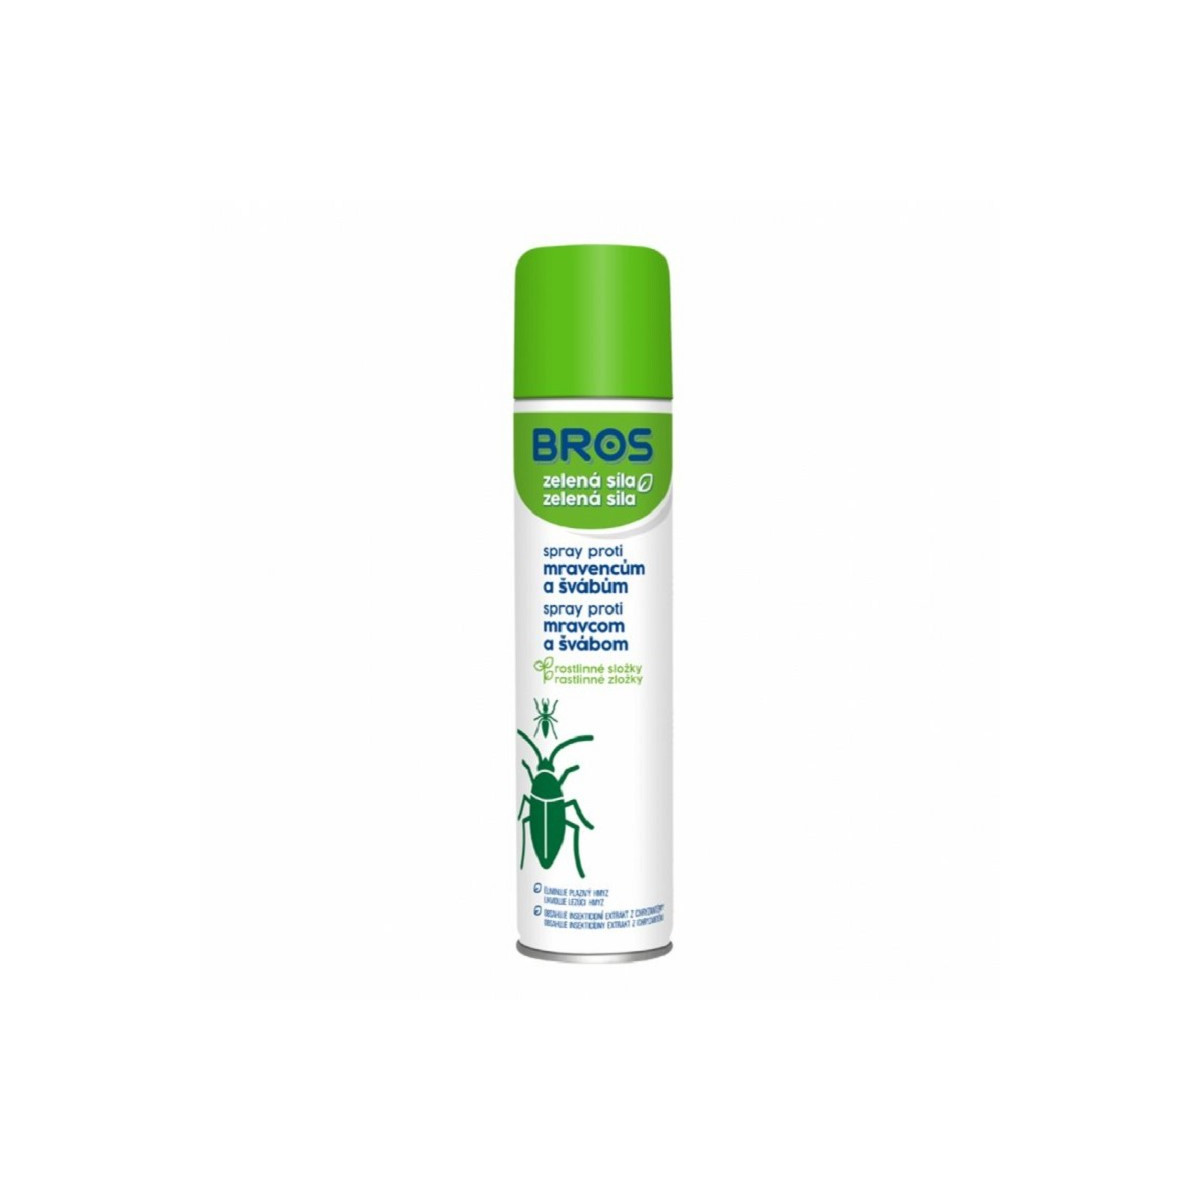 Spray na mravence a šváby - Bros - ochrana rostlin - 300 ml